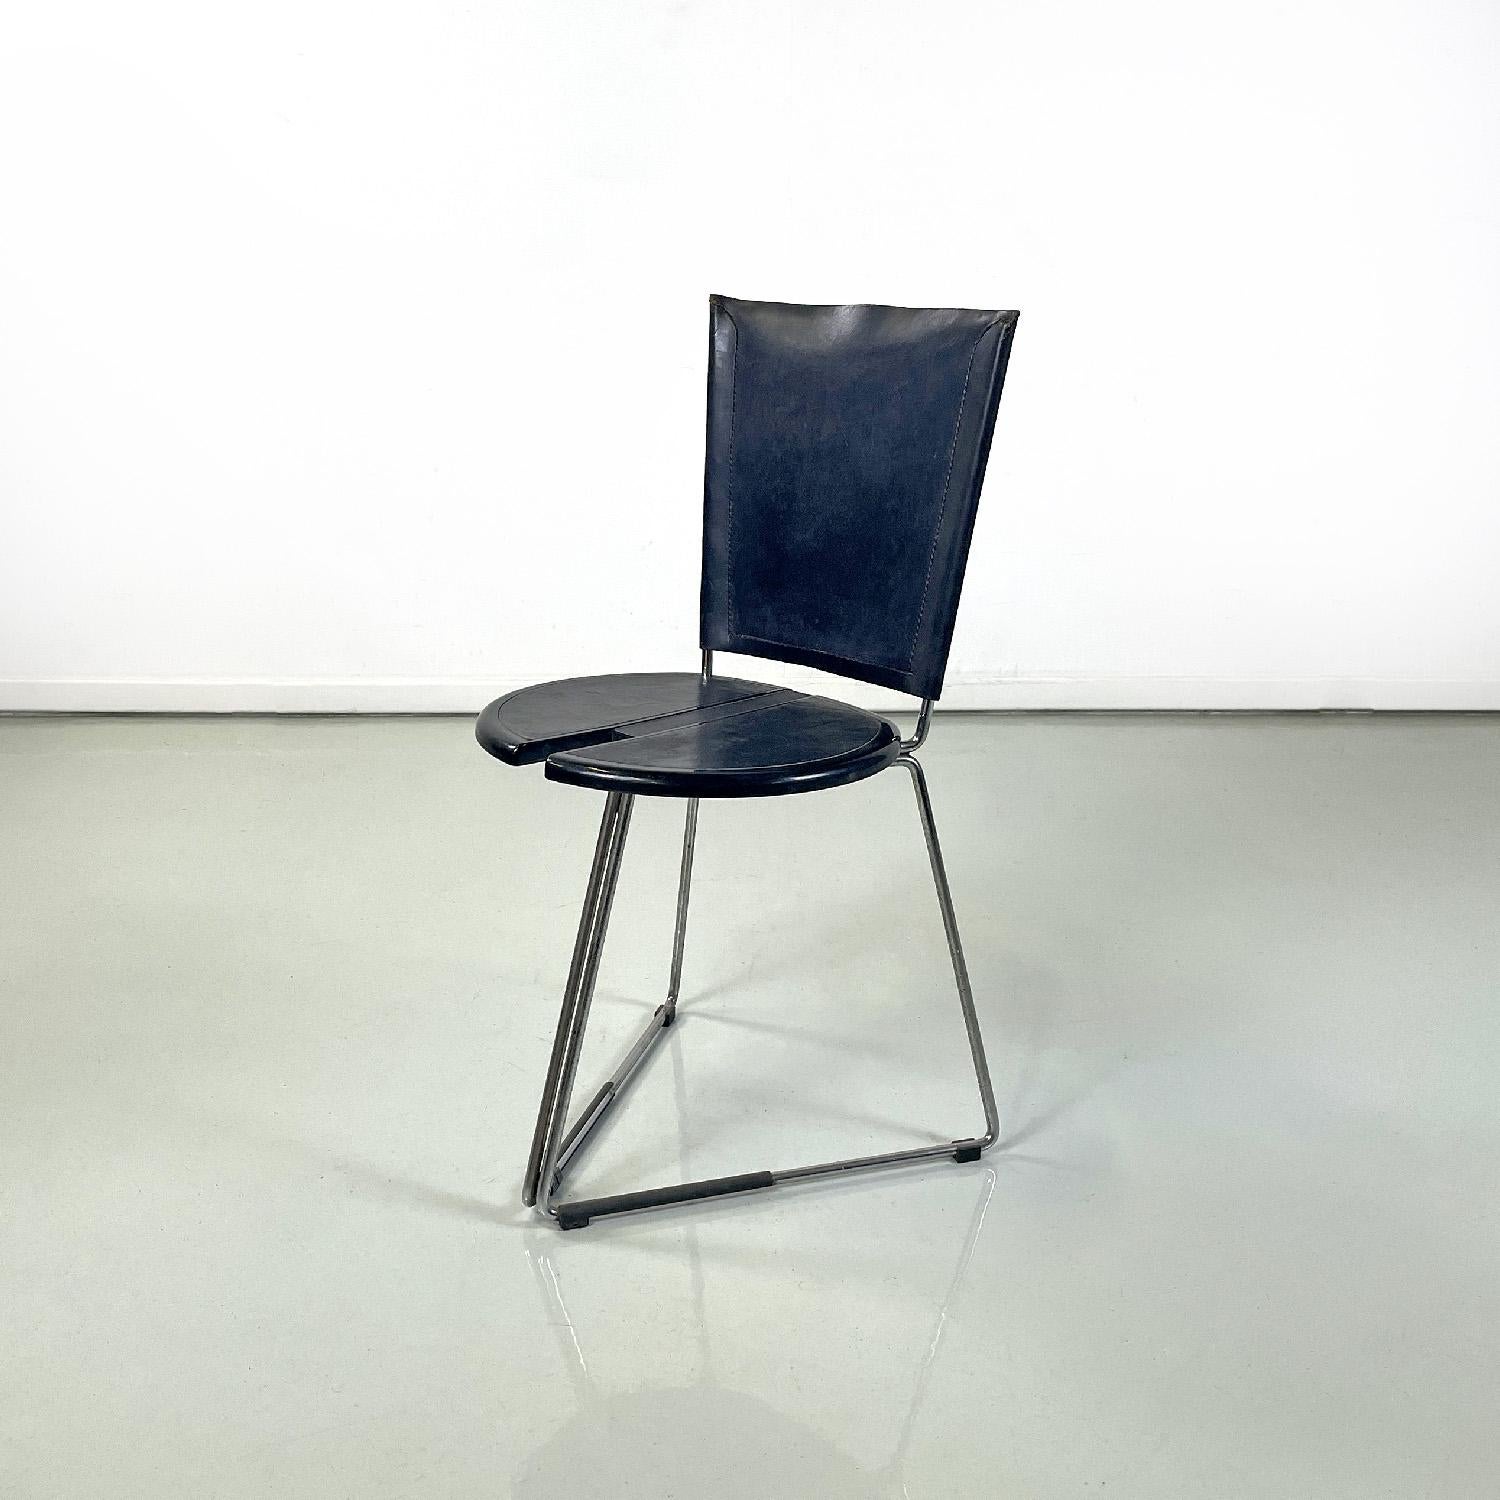 Chaise moderne italienne Terna par Gaspare Cairoli pour Seccose, 1980
Chaise mod. Terna avec base triangulaire. Le siège est rond, en plastique noir, avec deux parties semi-circulaires recouvertes de cuir noir et doté d'une cavité. Le dossier est en